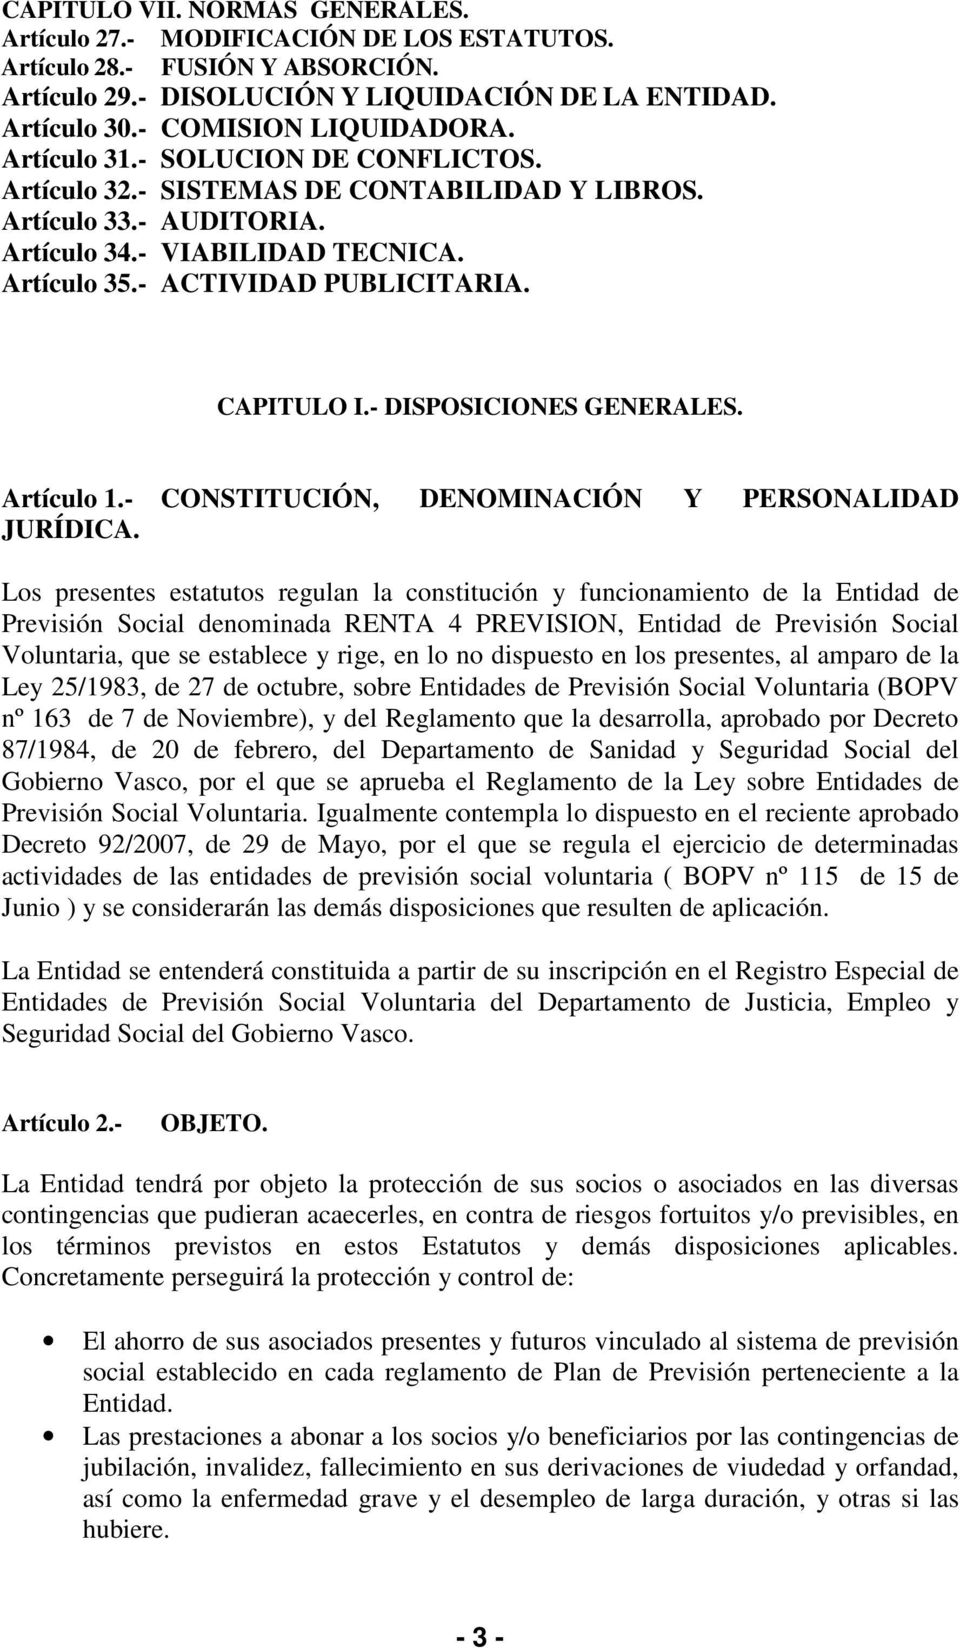 - DISPOSICIONES GENERALES. Artículo 1.- CONSTITUCIÓN, DENOMINACIÓN Y PERSONALIDAD JURÍDICA.